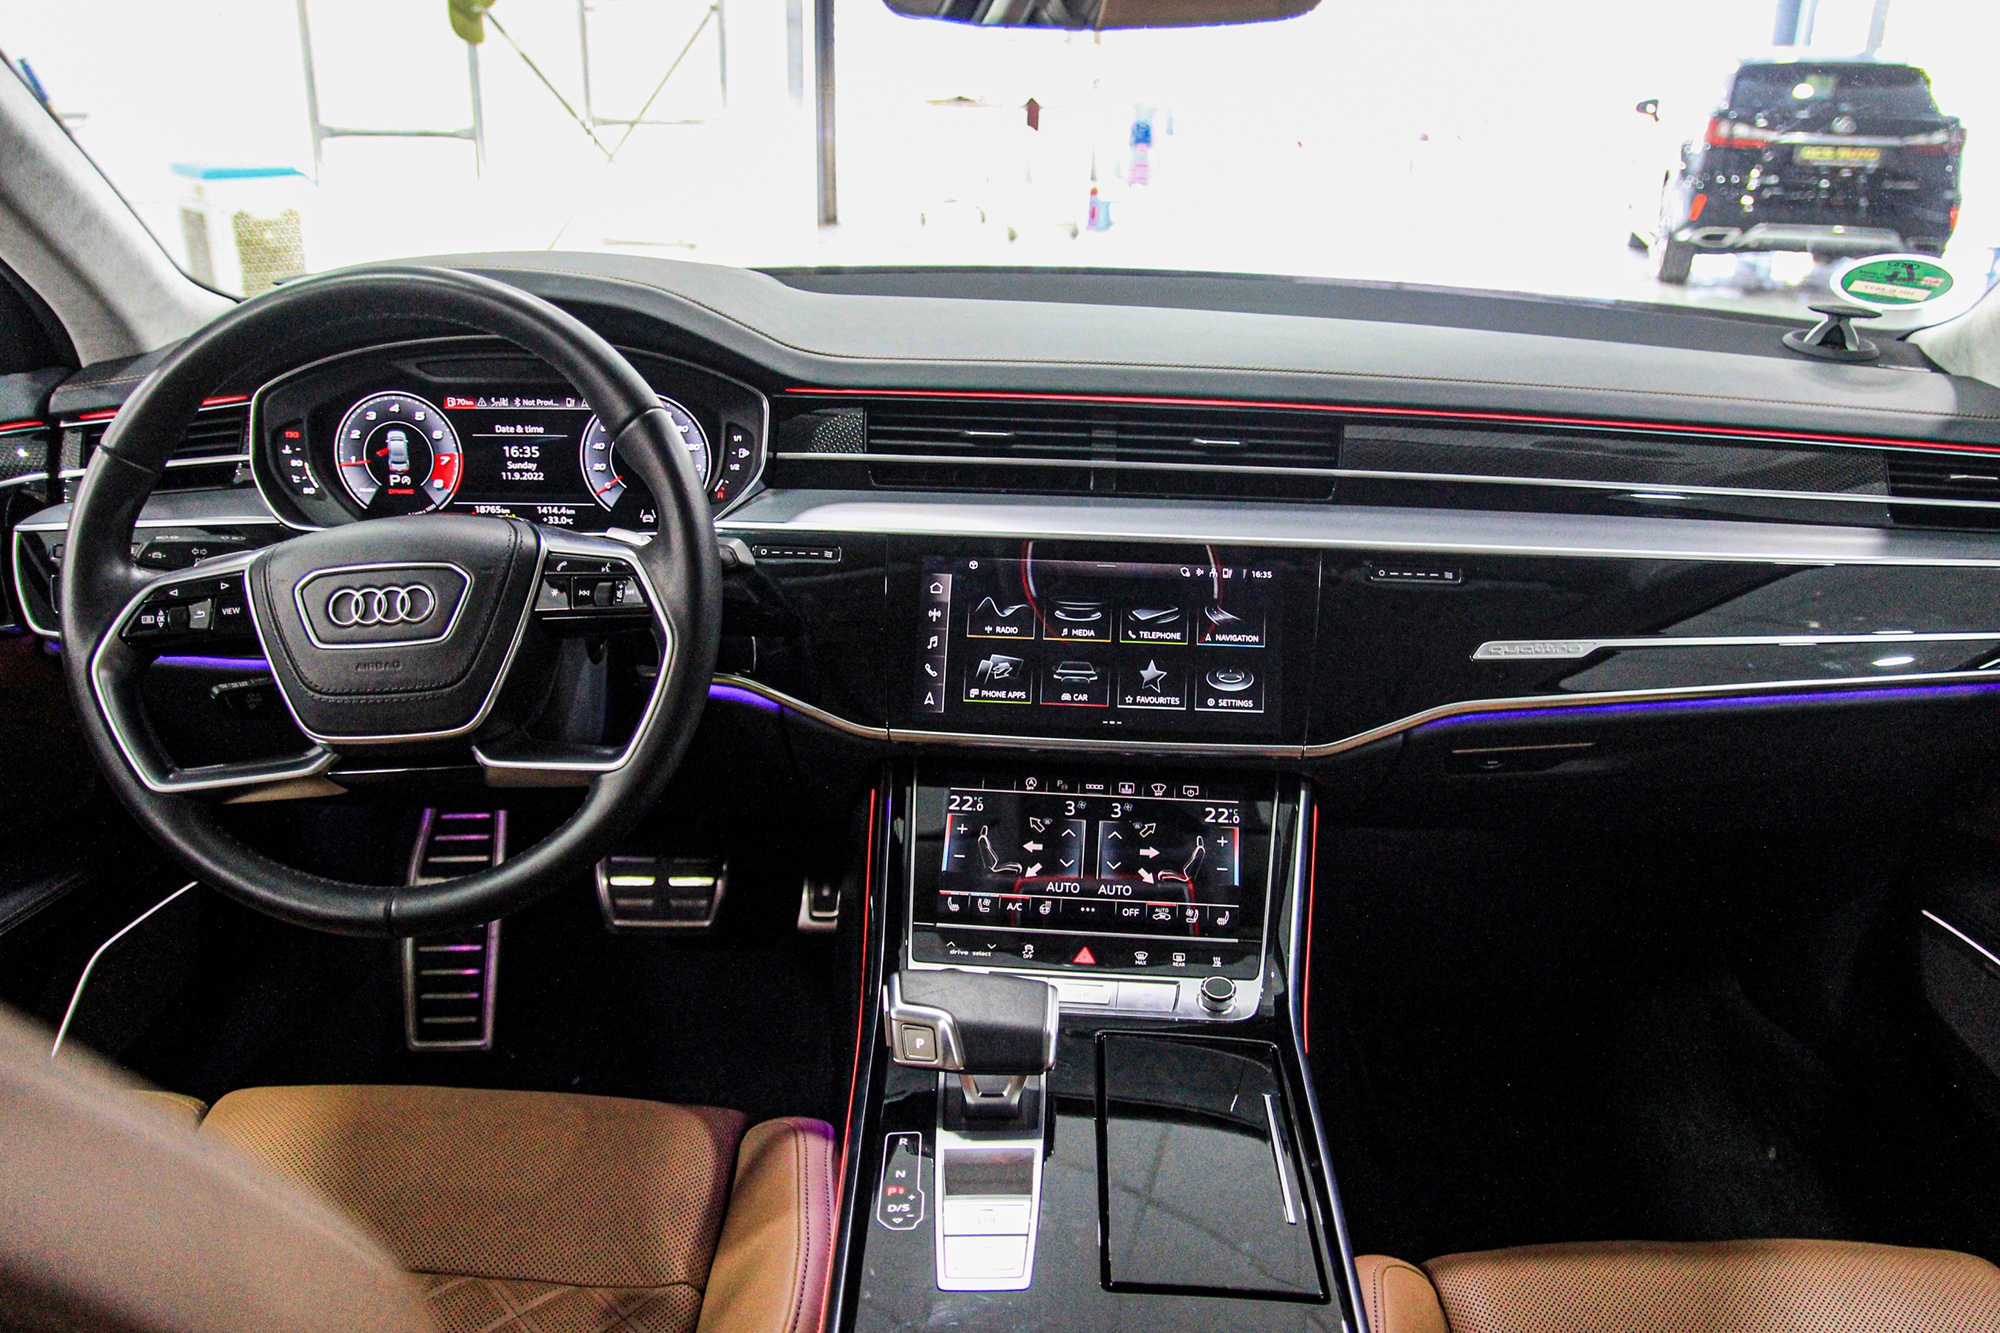 Hàng hiếm Audi S8 2021 được chào bán gần 10 tỷ đồng ở Hà Nội - ảnh 8